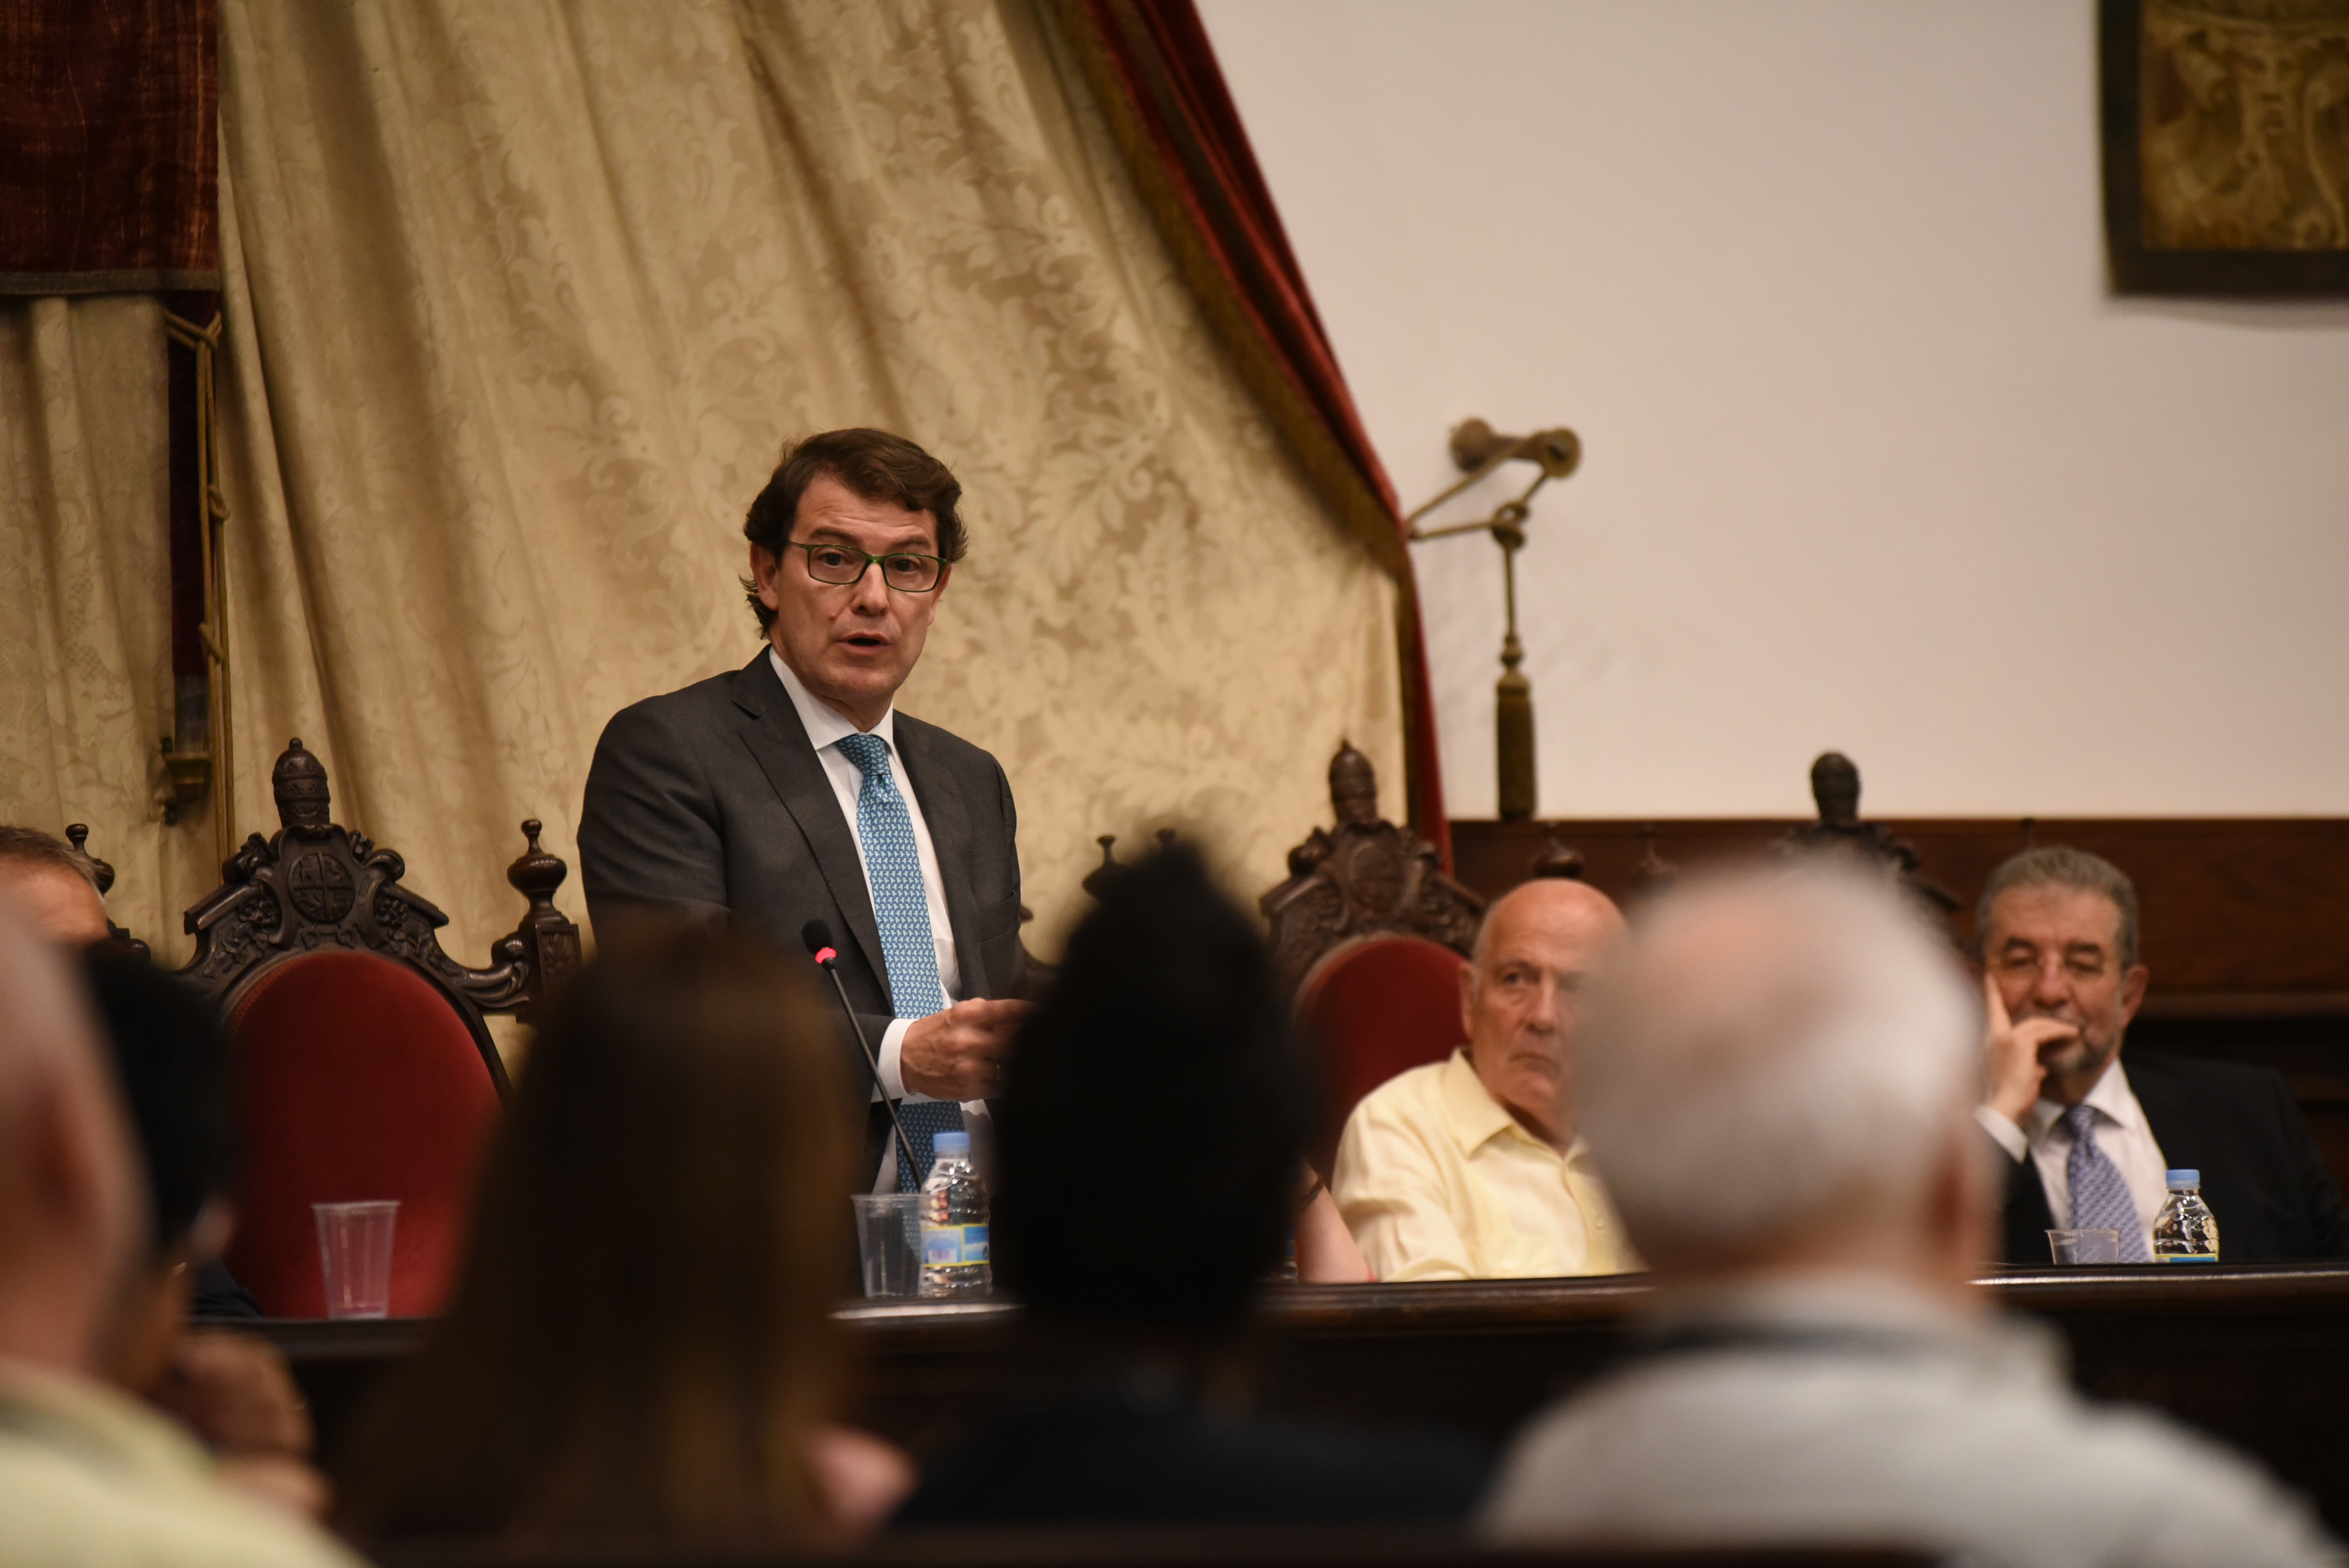 El rector apela al vínculo entre América Latina y la Universidad de Salamanca, “donde se defiende la democracia y los derechos”, al inaugurar el Congreso ICA 